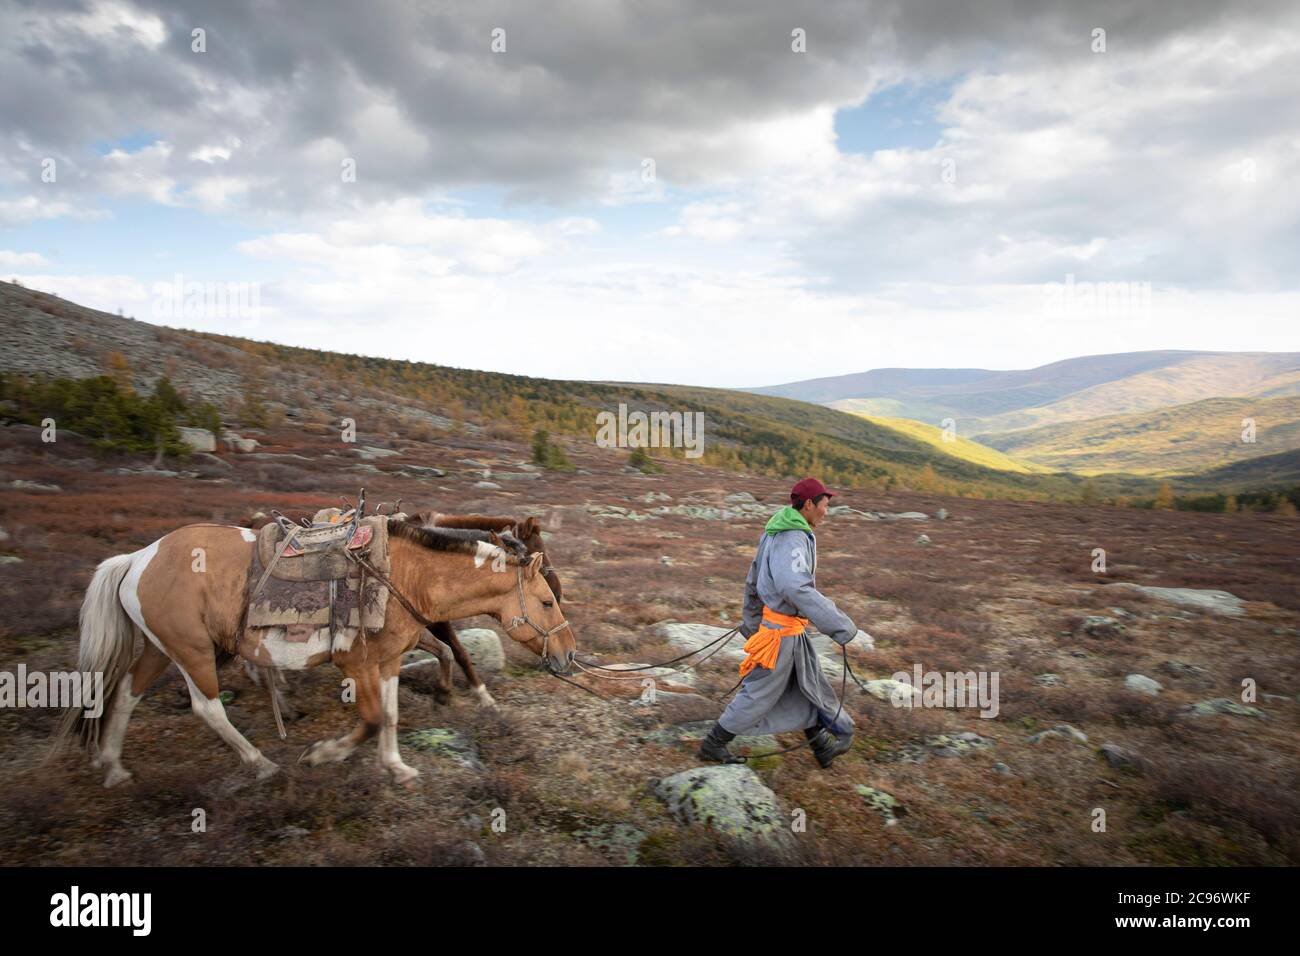 Homme mongol avec des chevaux dans un paysage du nord de la Mongolie Banque D'Images